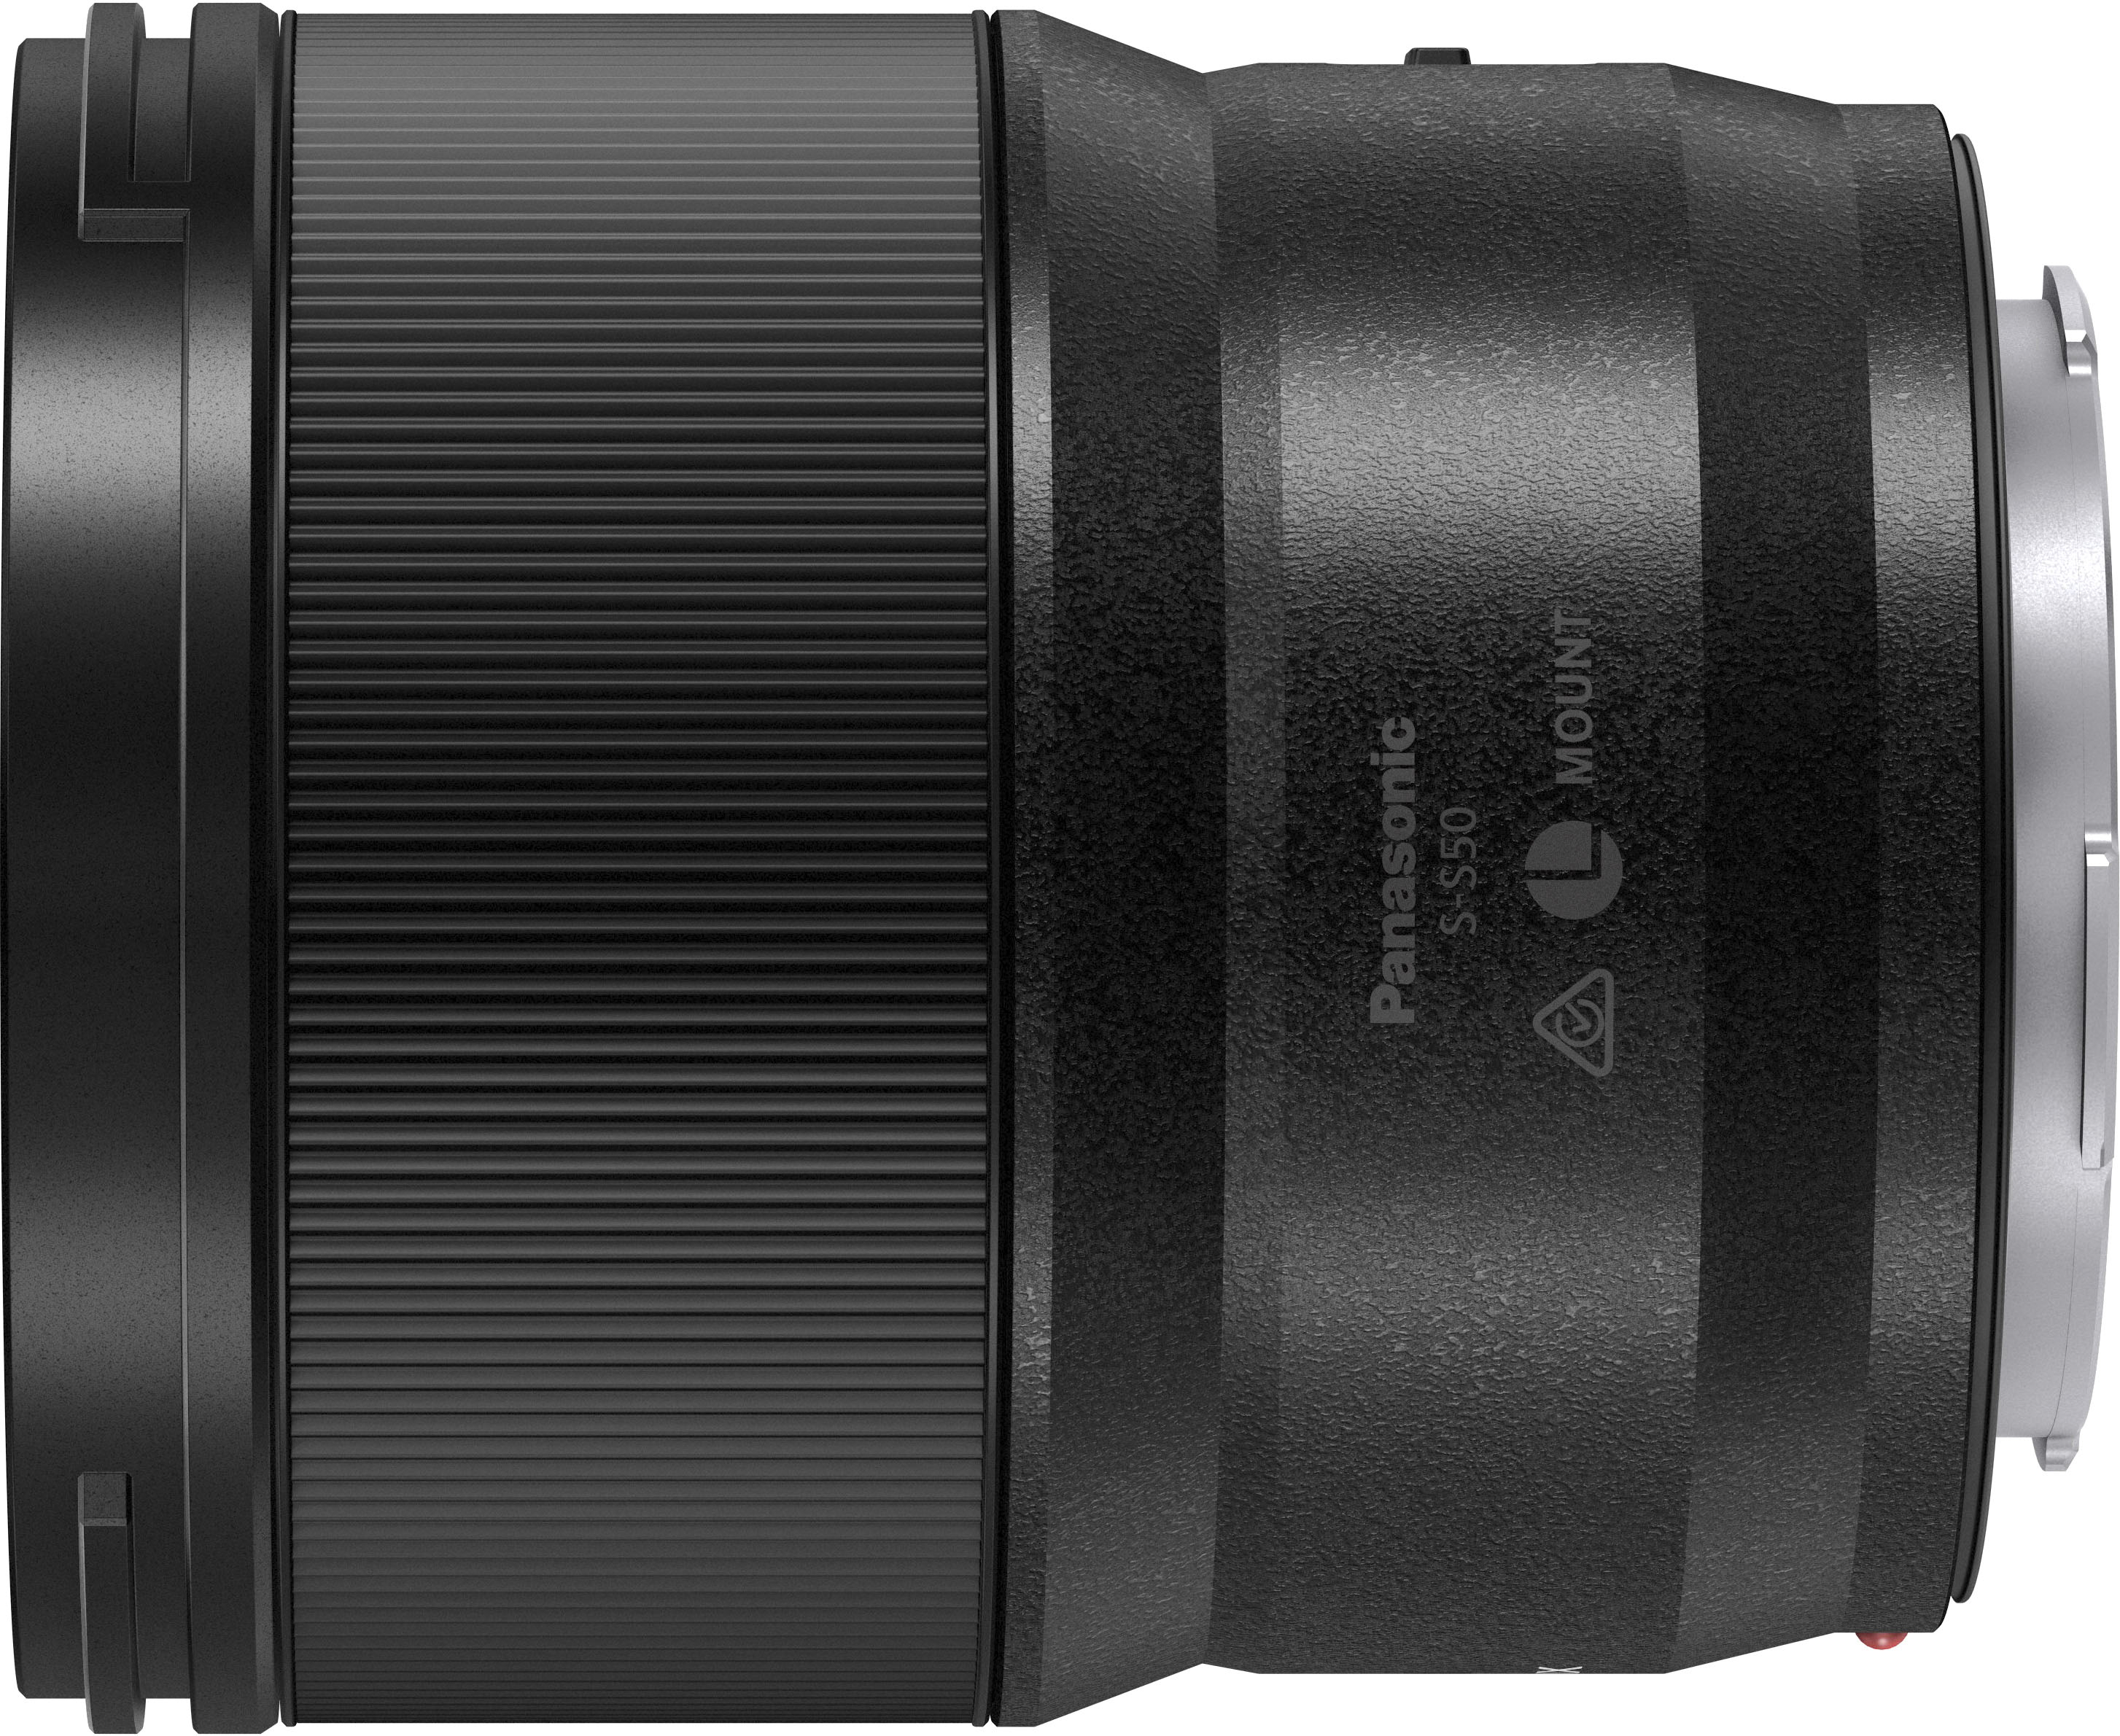 Panasonic Lumix S5 Mirrorless Camera with LUMIX S S50 50mm f/1.8 Lens